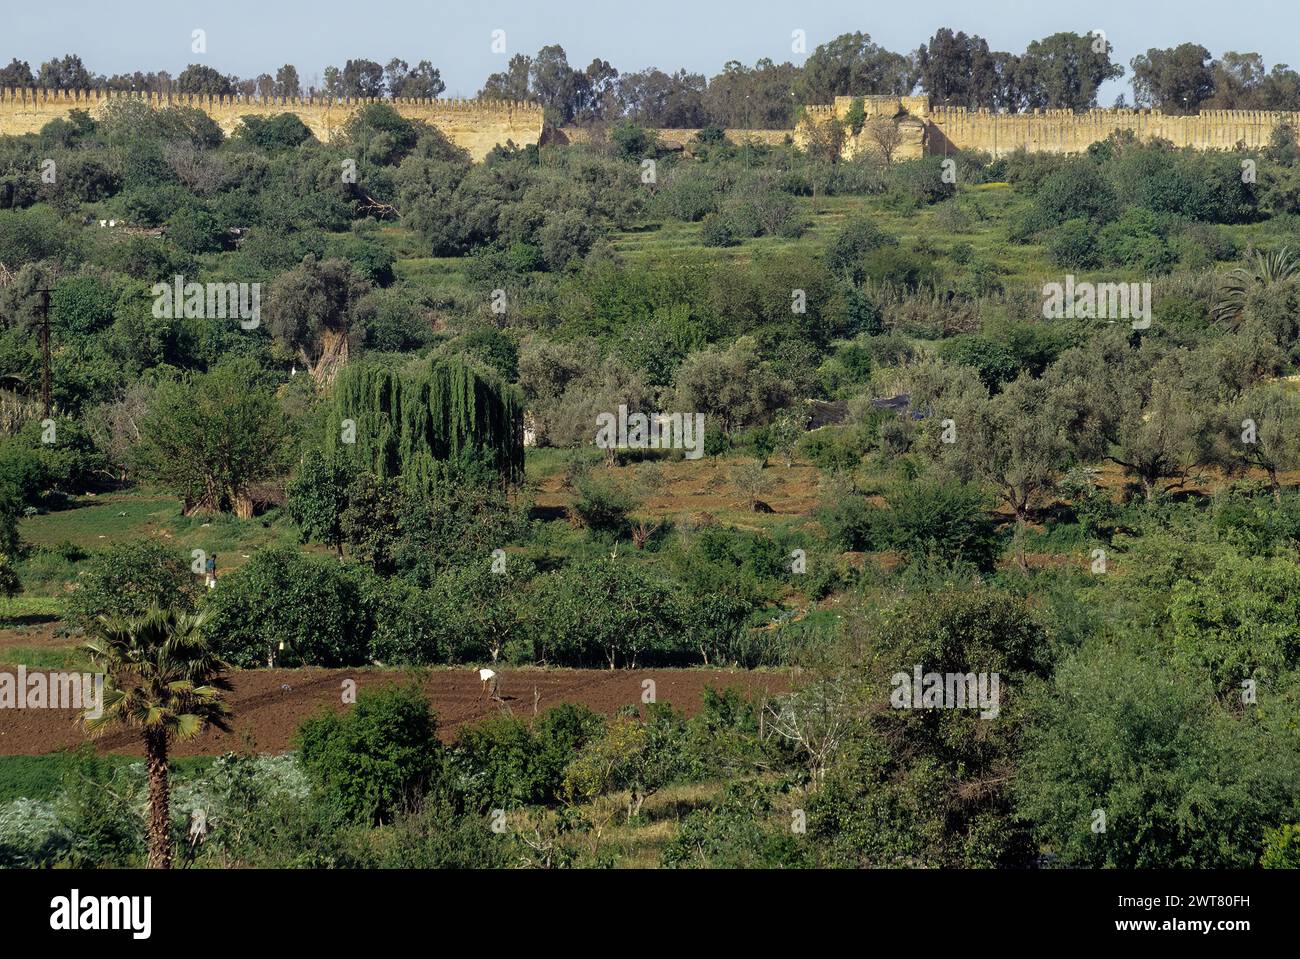 Terreni agricoli all'interno delle mura cittadine che circondano Meknes, Marocco. Il muro ha una circonferenza di circa 25 miglia. Foto Stock